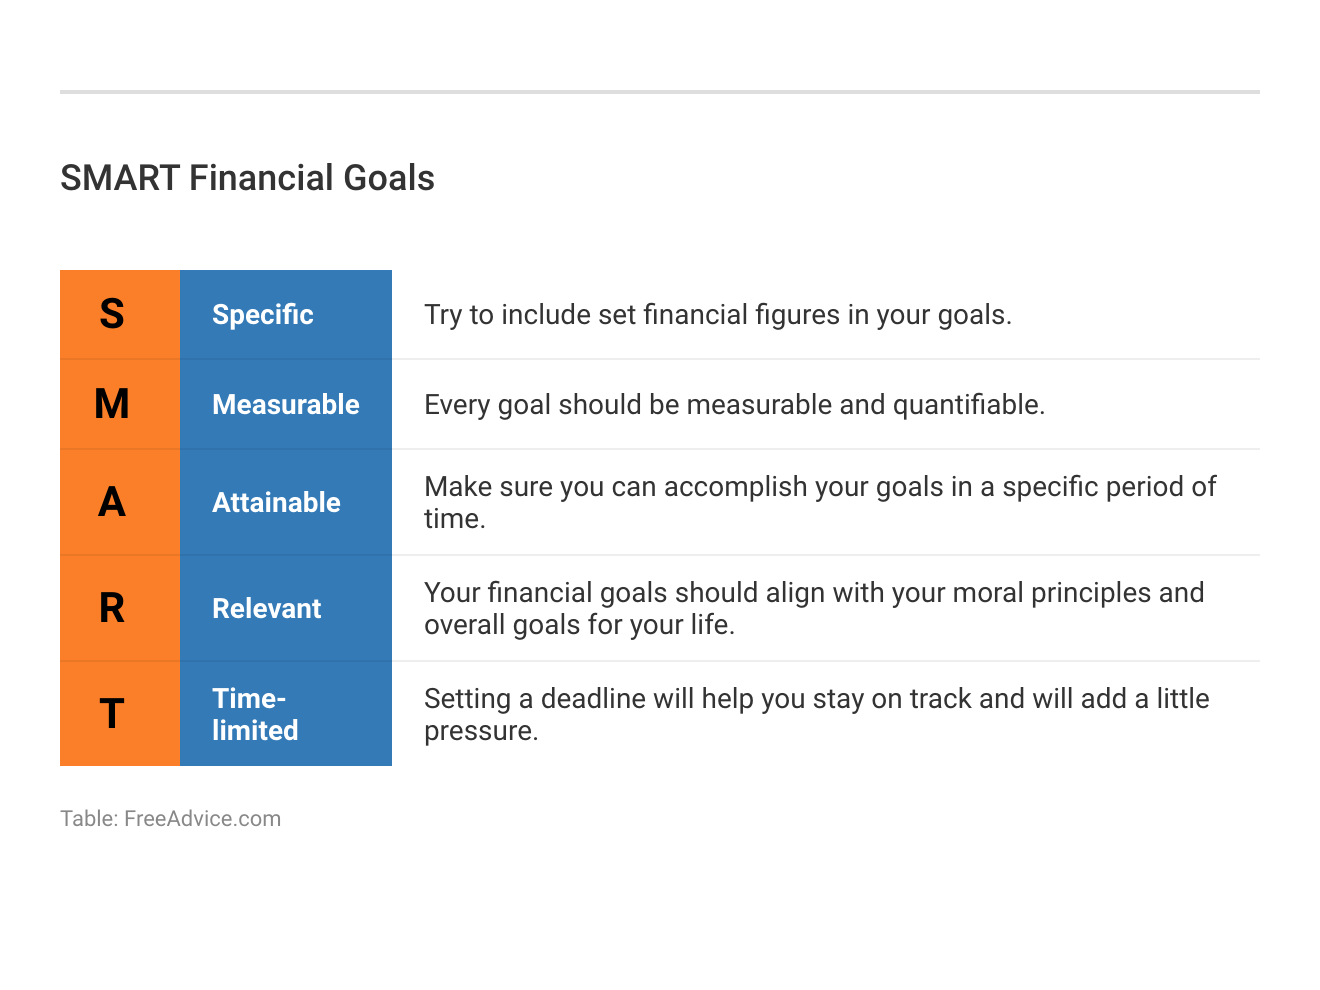 <h3>SMART Financial Goals</h3>